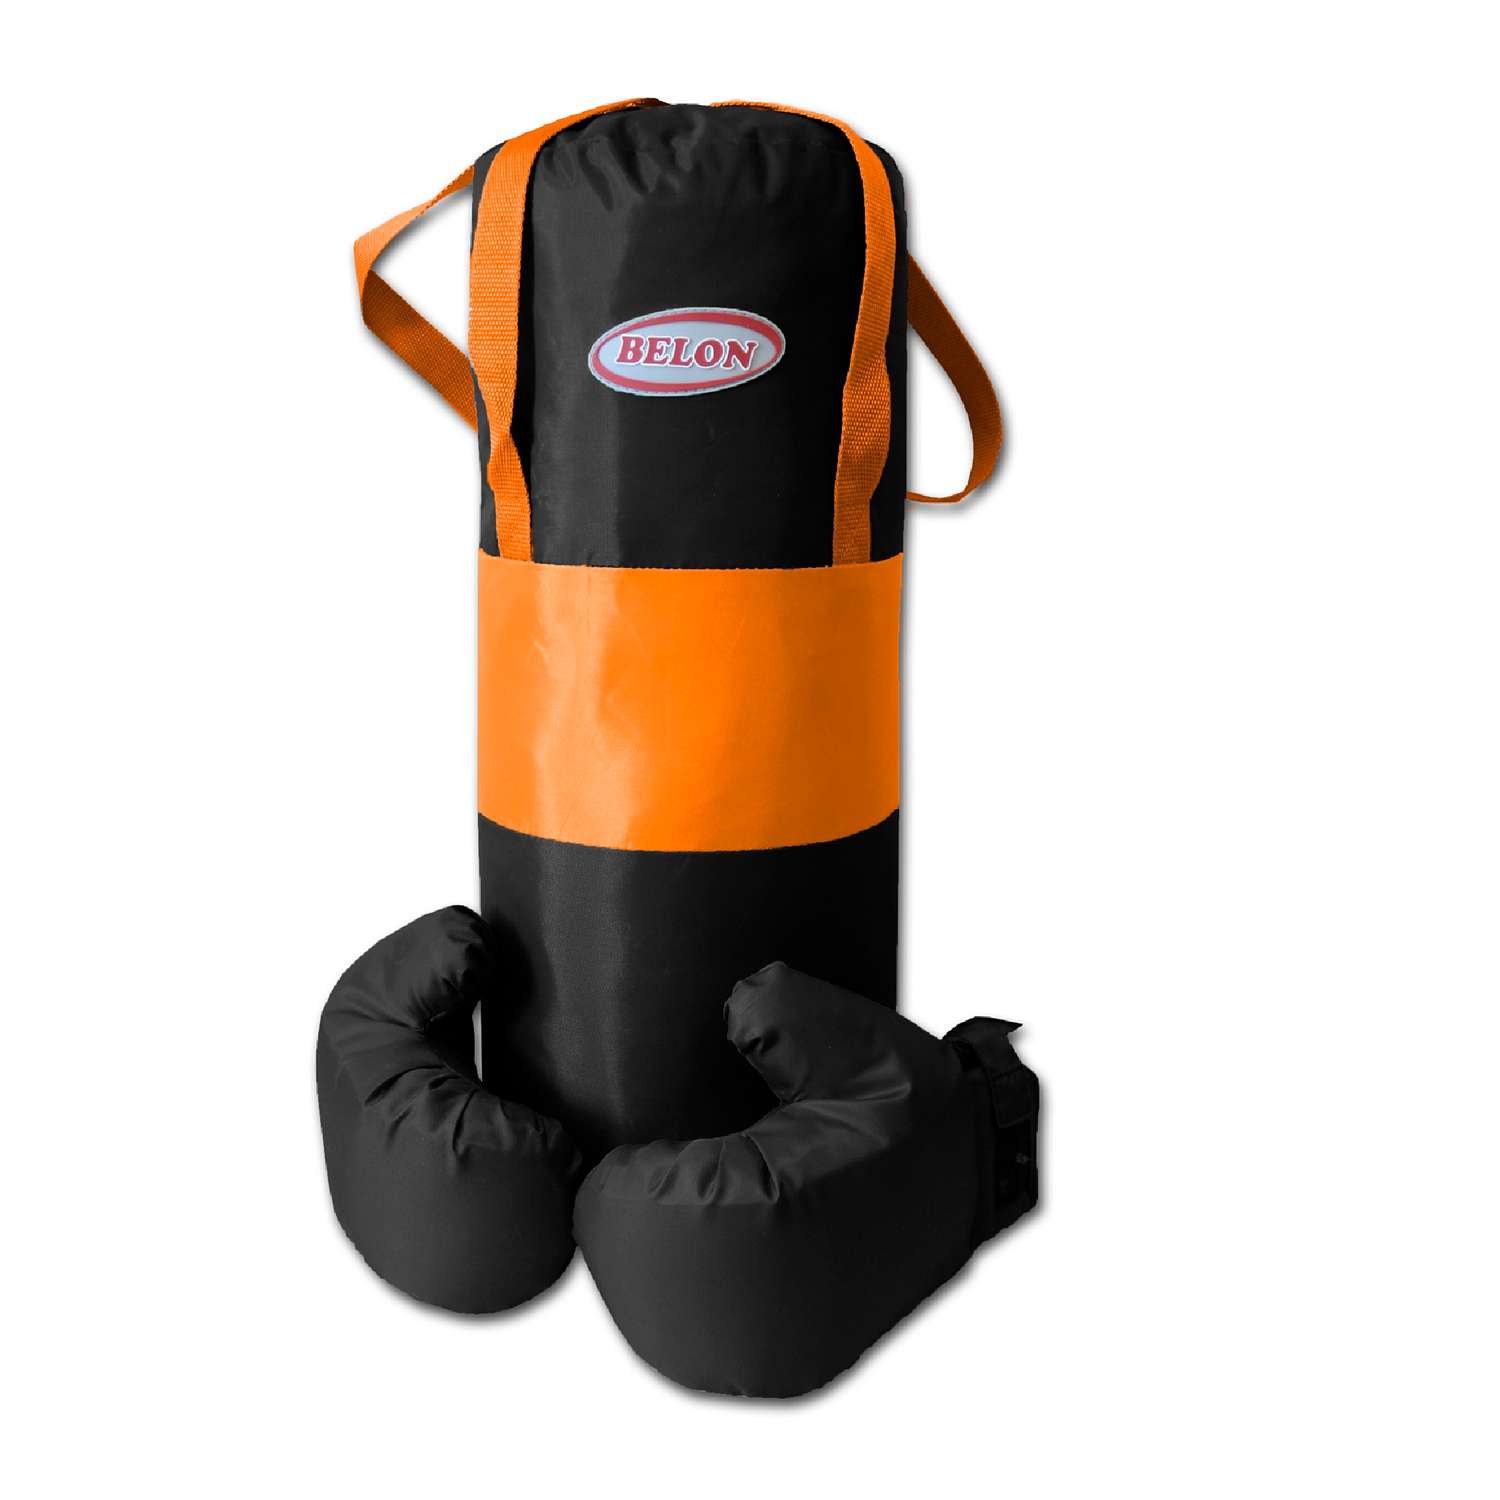 Детский набор для бокса Belon familia груша 50см х 20см с перчатками цвет оранжевый и чёрный - фото 1